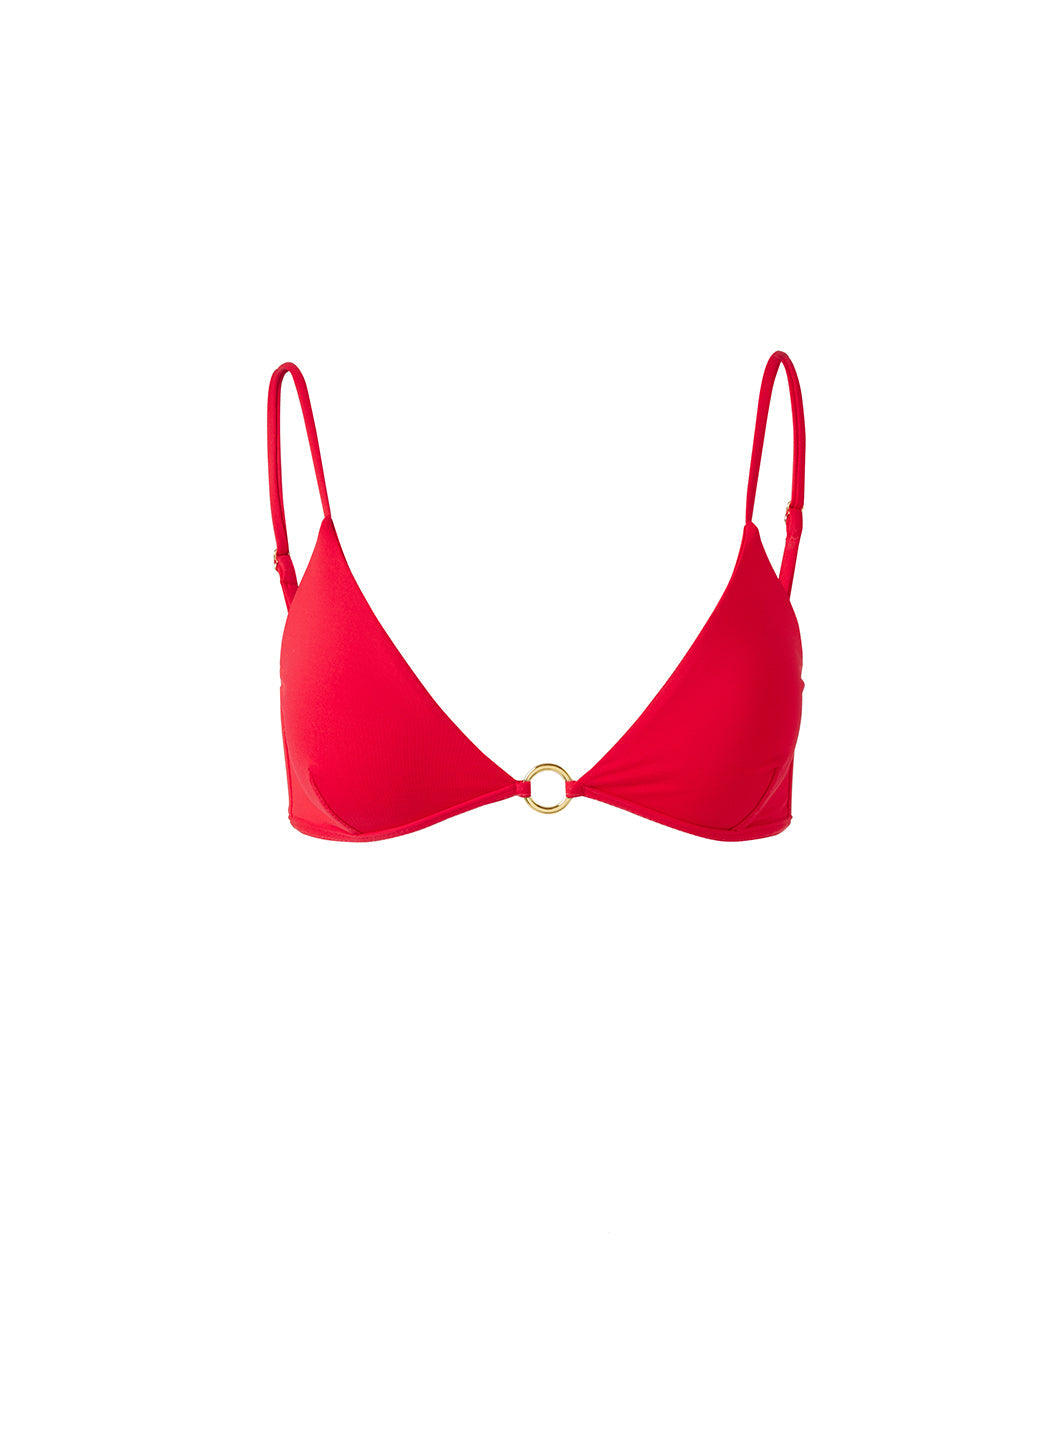 Greece Red Bikini Top Cutout 2024